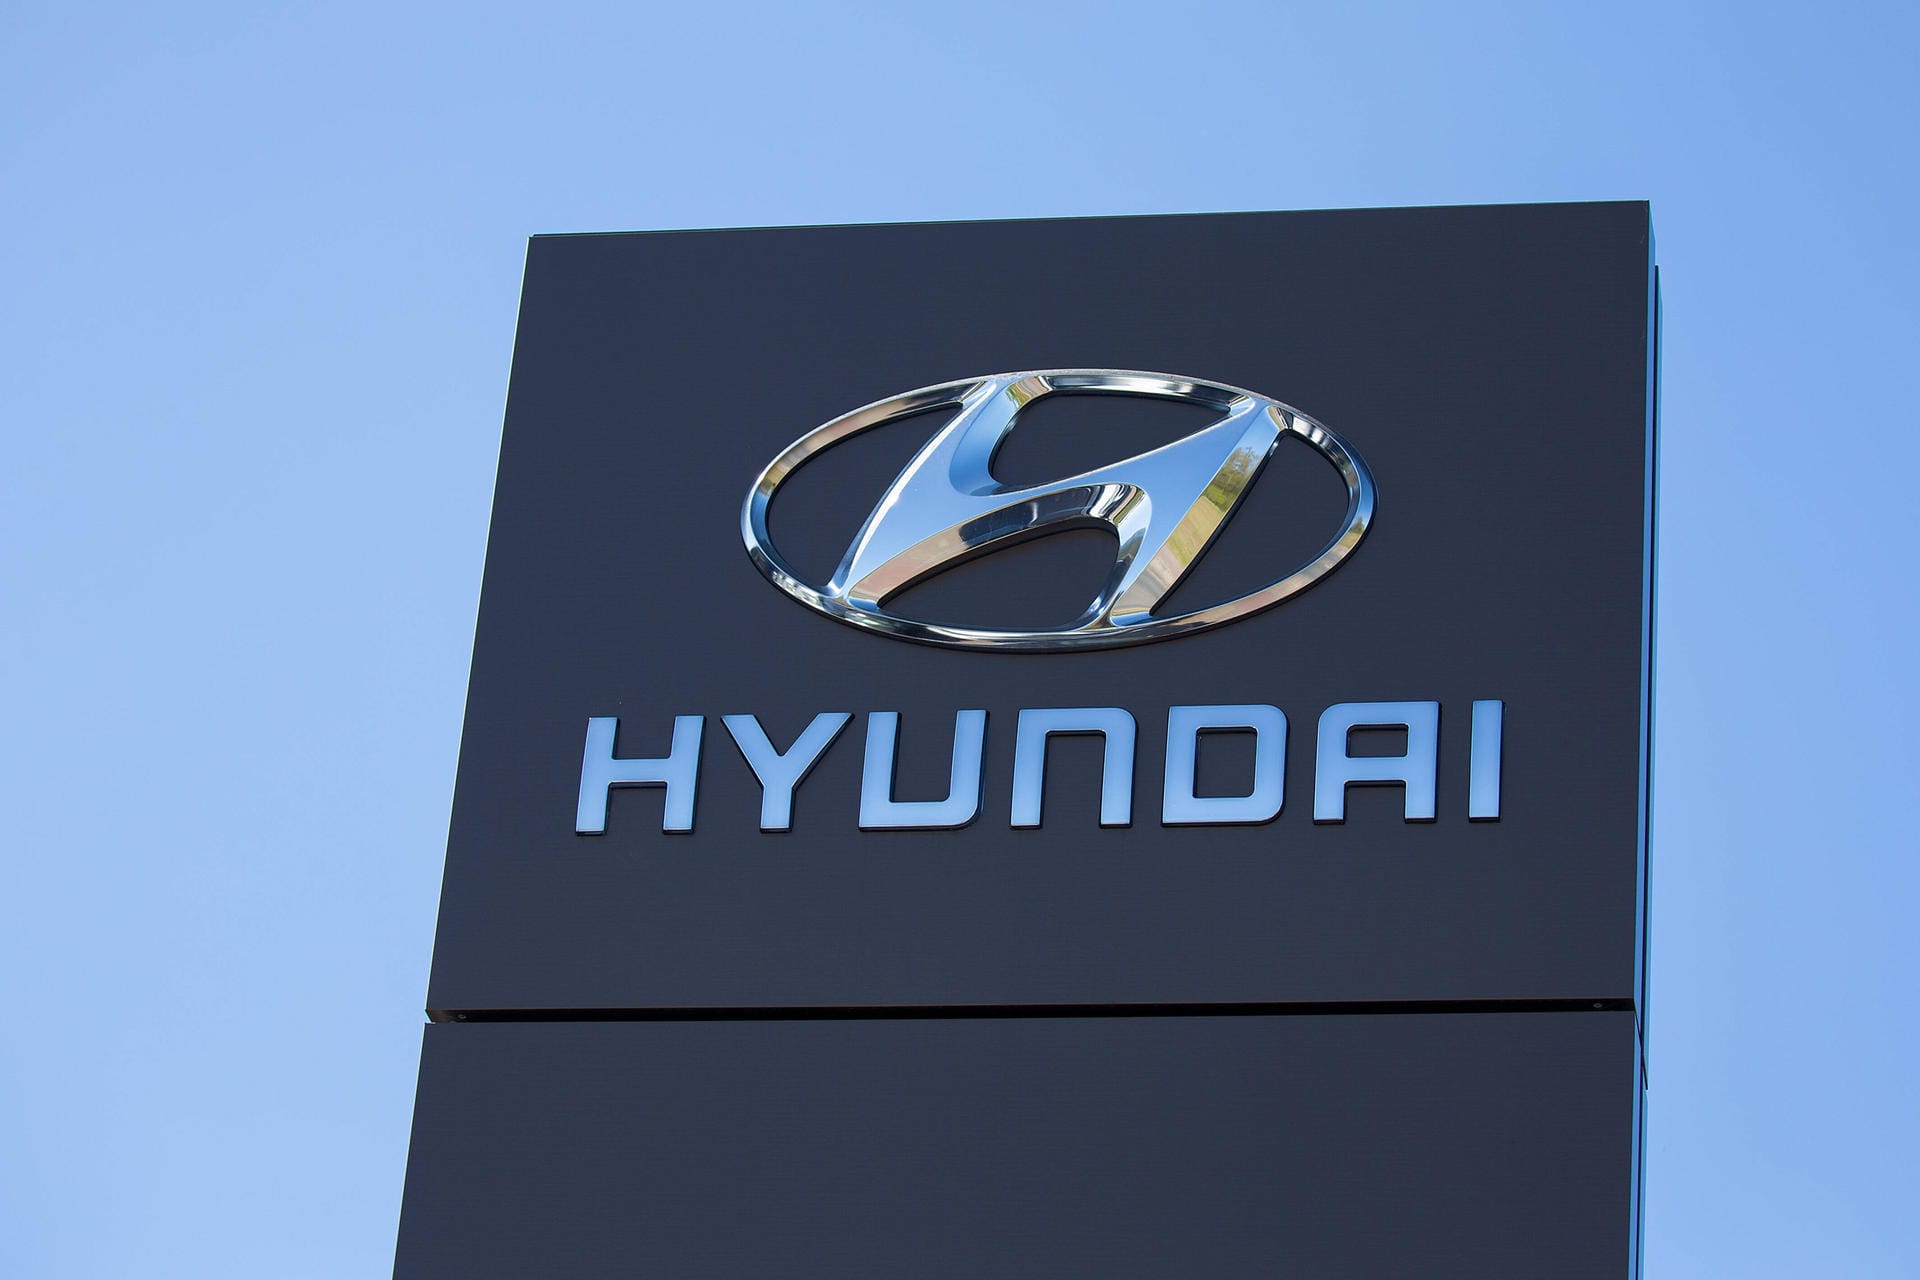 Hyundai: Der koreanische Autohersteller wurde 1947 gegründet – eigentlich als Baufirma. Erst seit 1967 werden Autos produziert. Der Name "Hyundai" setzt sich zusammen aus den koreanischen Wörtern "Hyun" (현) und "Dai" (대) und bedeutet übersetzt so viel wie "modernes Zeitalter".